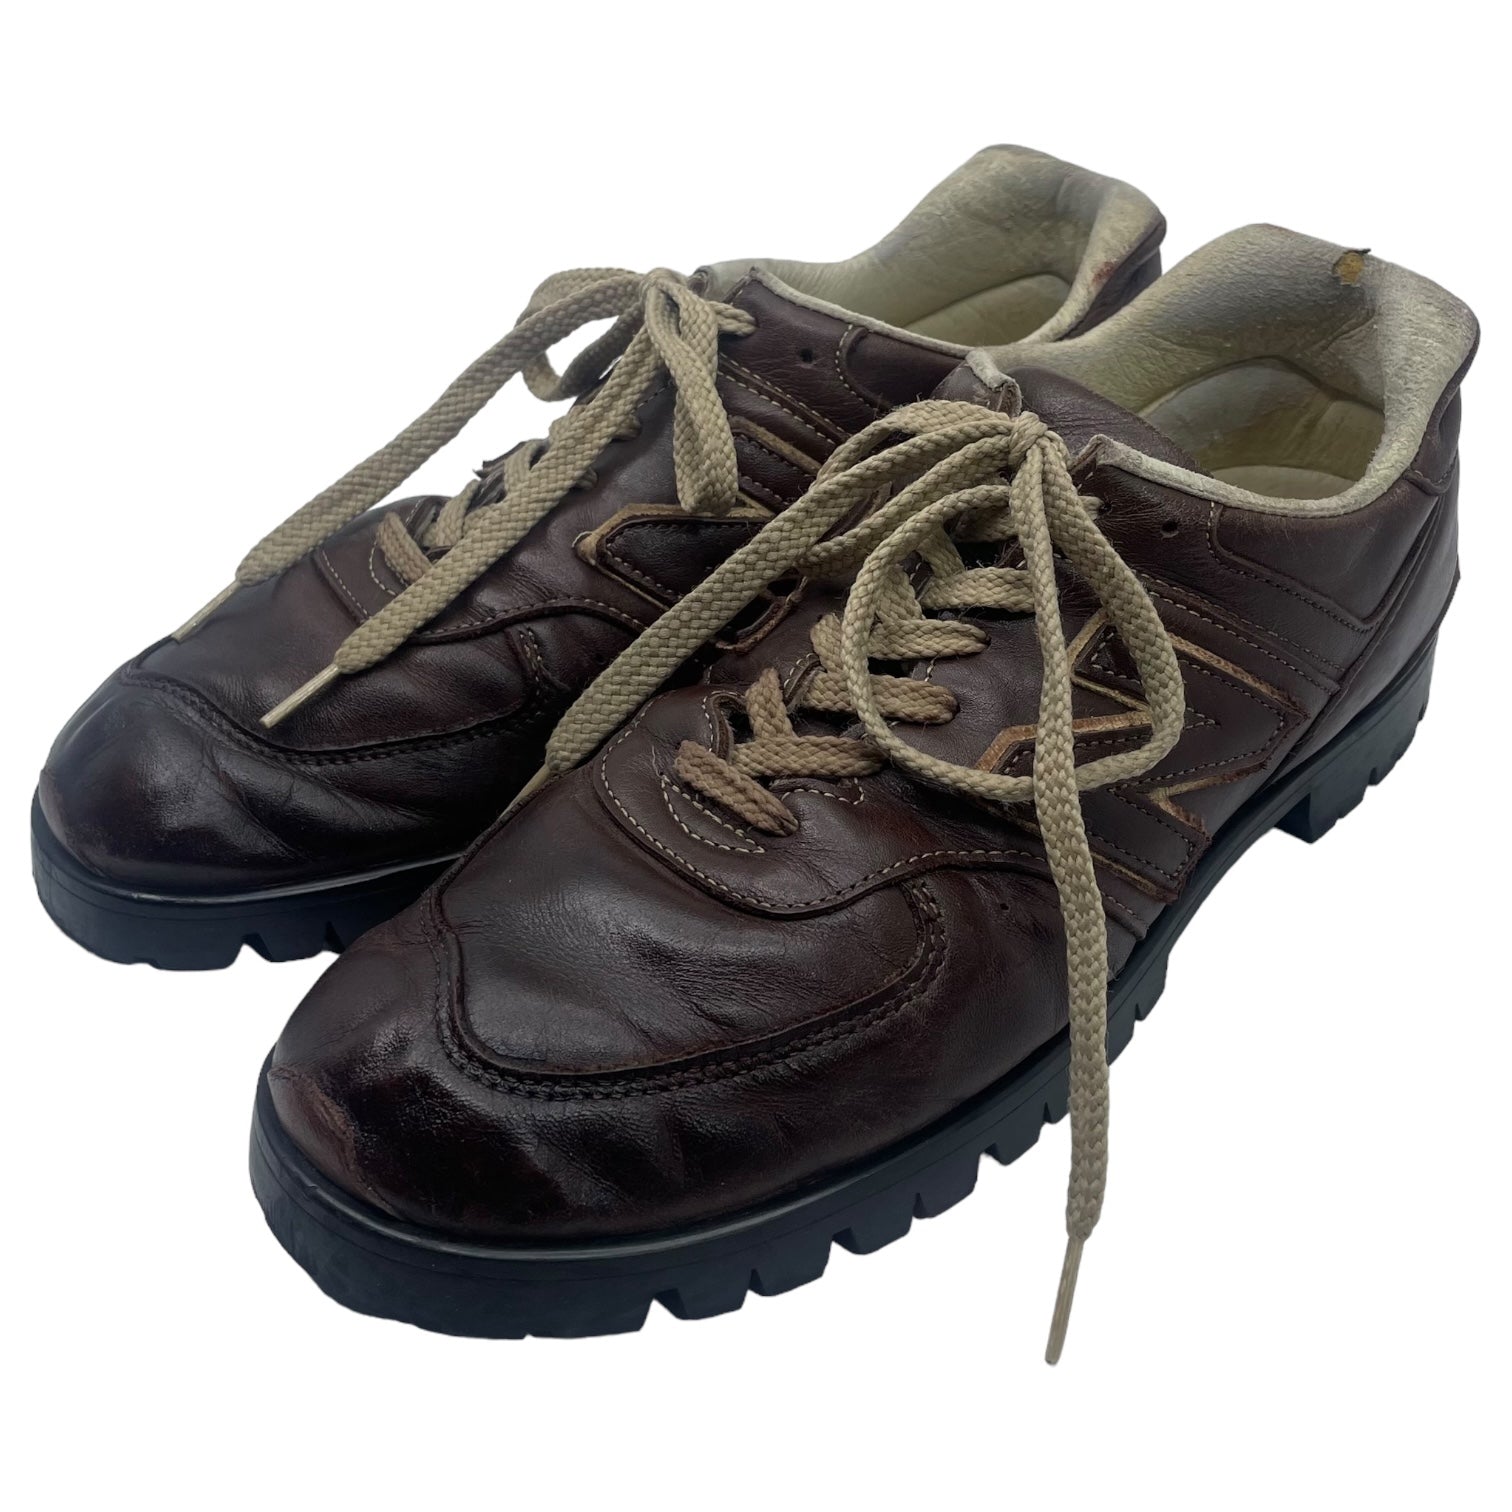 NEW BALANCE(ニューバランス) boots custom leather sneakers 「576 UK MADE」 ブーツカスタム レザースニーカー LM576NB SIZE 27.5 ブラウン リミテッドエディション個人カスタム オールソールカスタムメイド品 一点物